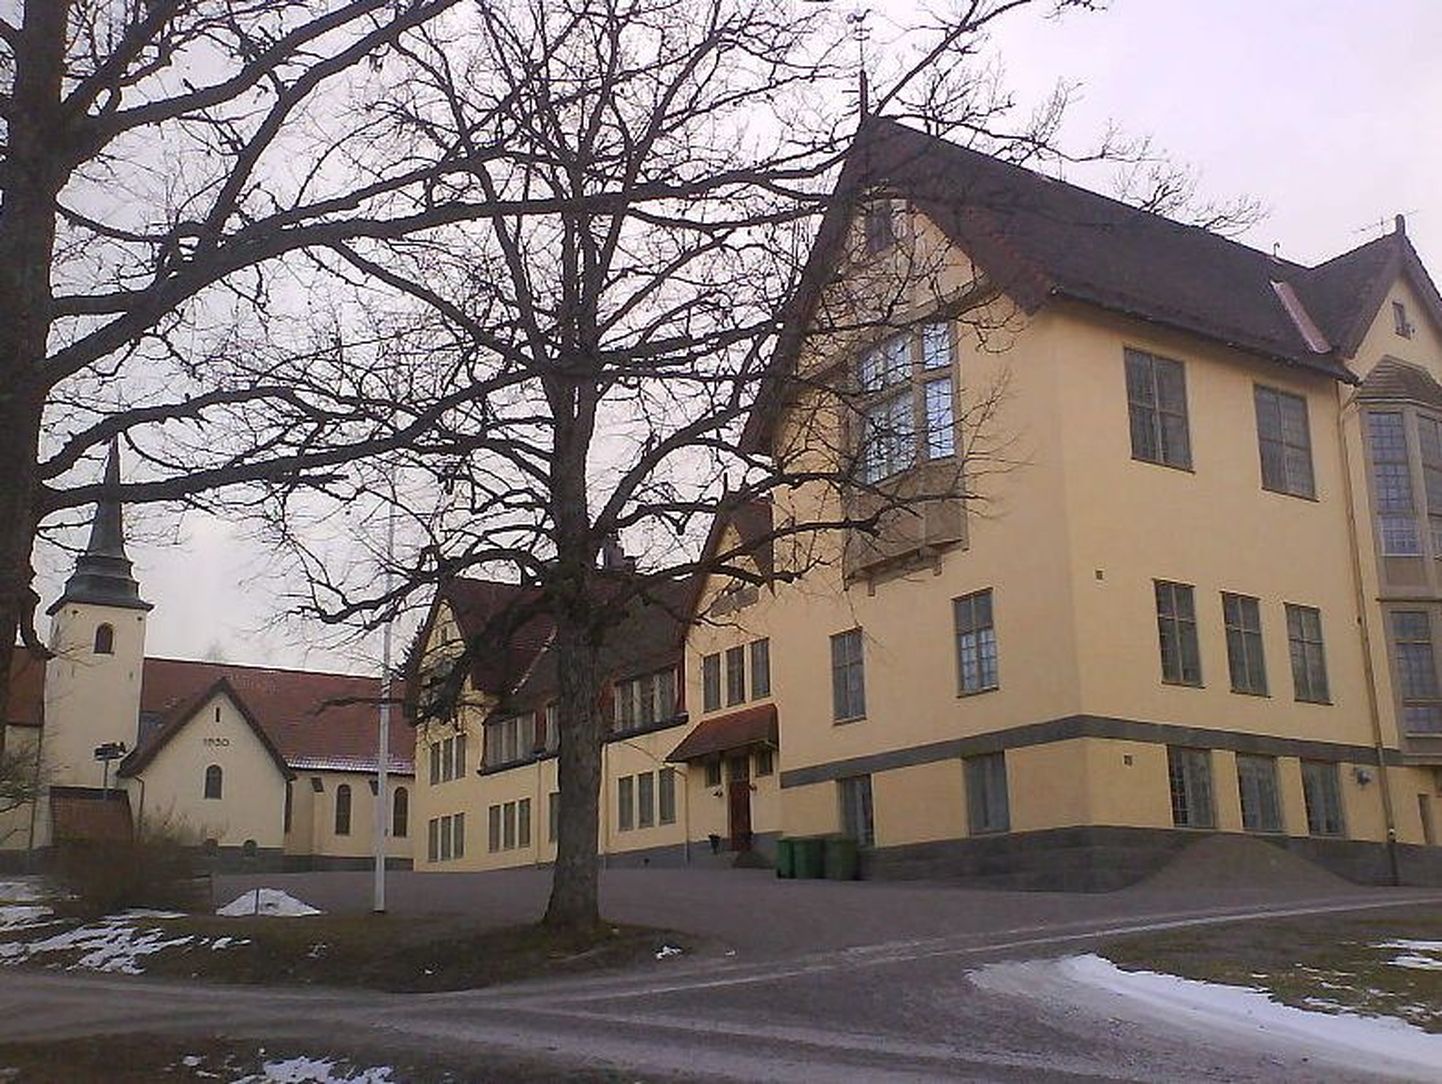 Lundsbergi internaatkool